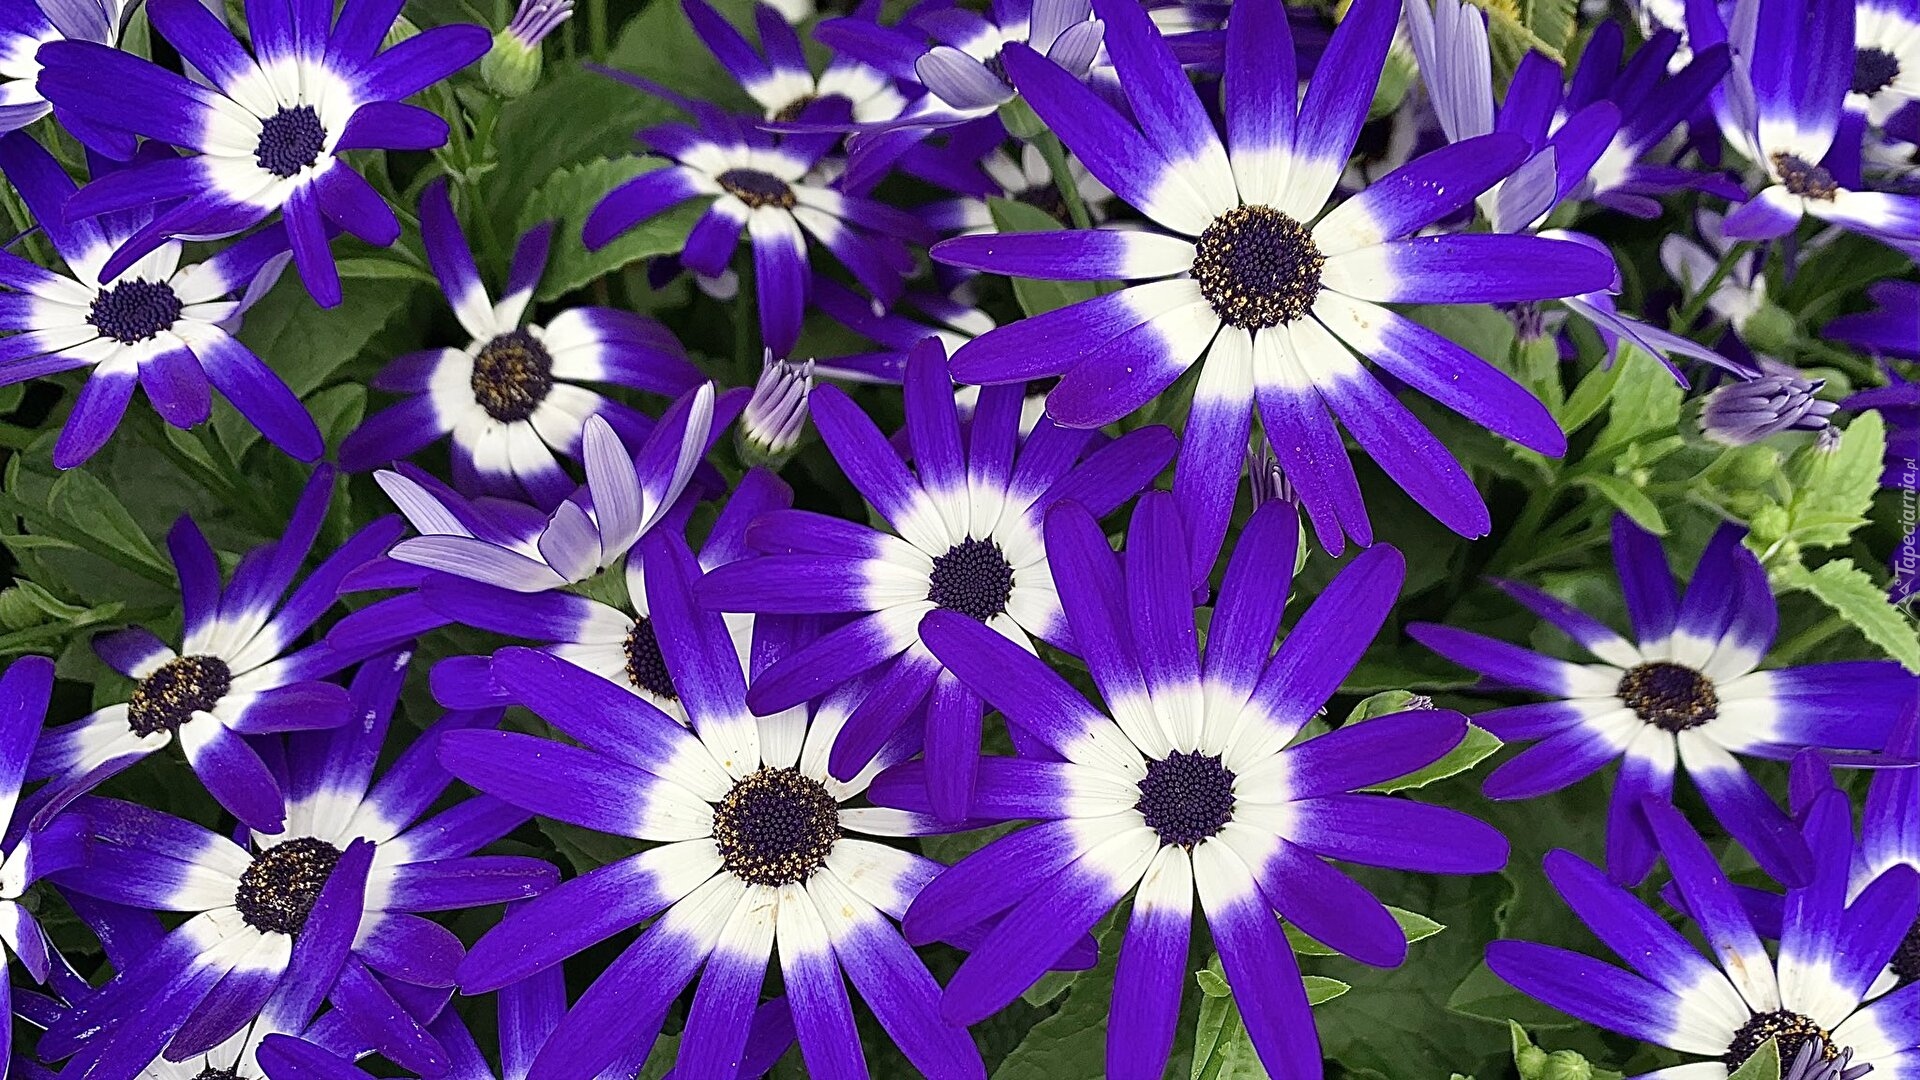 Kwiaty, Niebiesko-białe, Cynerarie